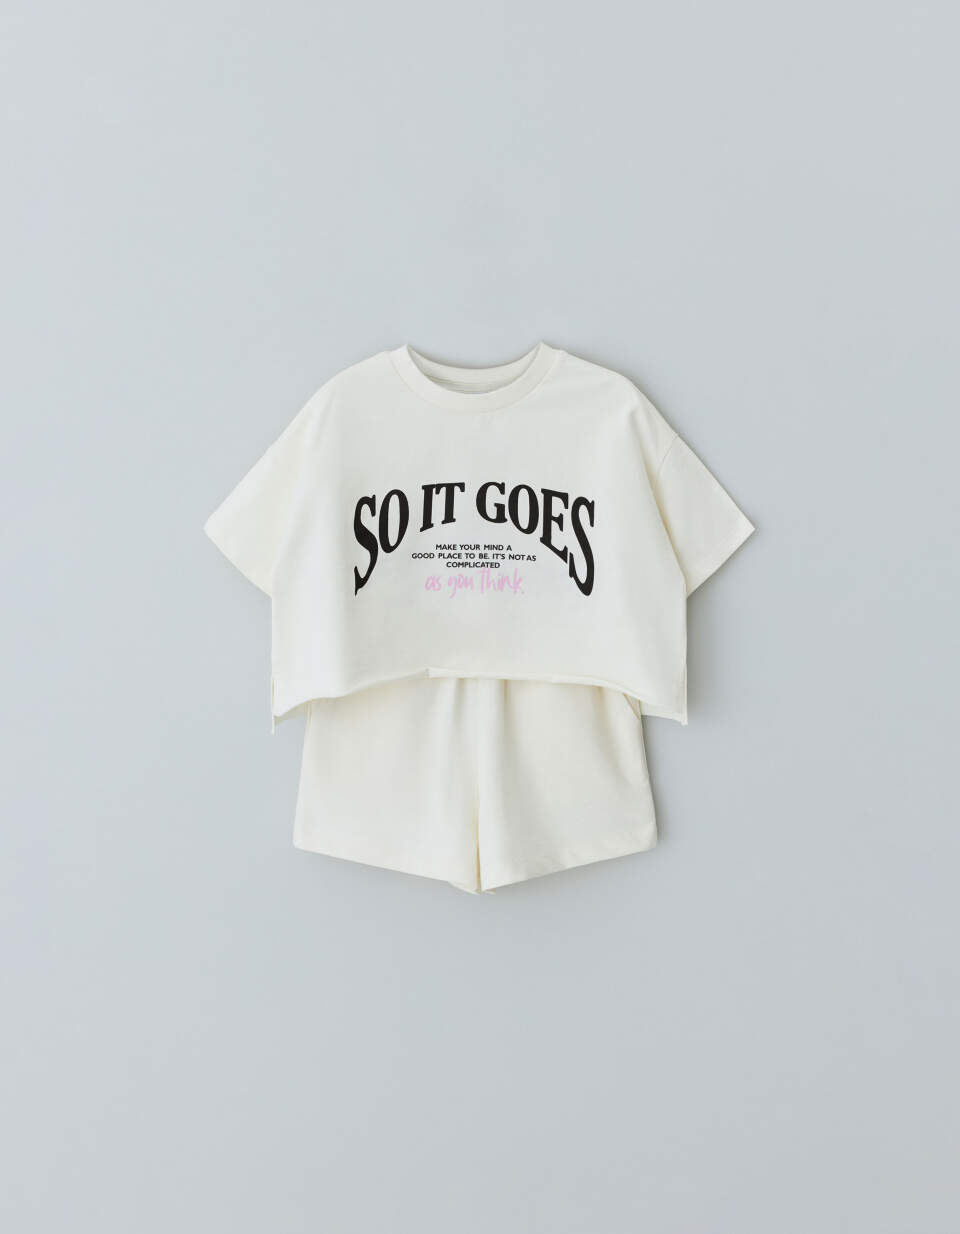 Комплект из футболки и шорт для девочек футболки с рисунком радуги и леопарда для девочек день благодарения тыквы для девочек 12 месяцев осенние детские футболки